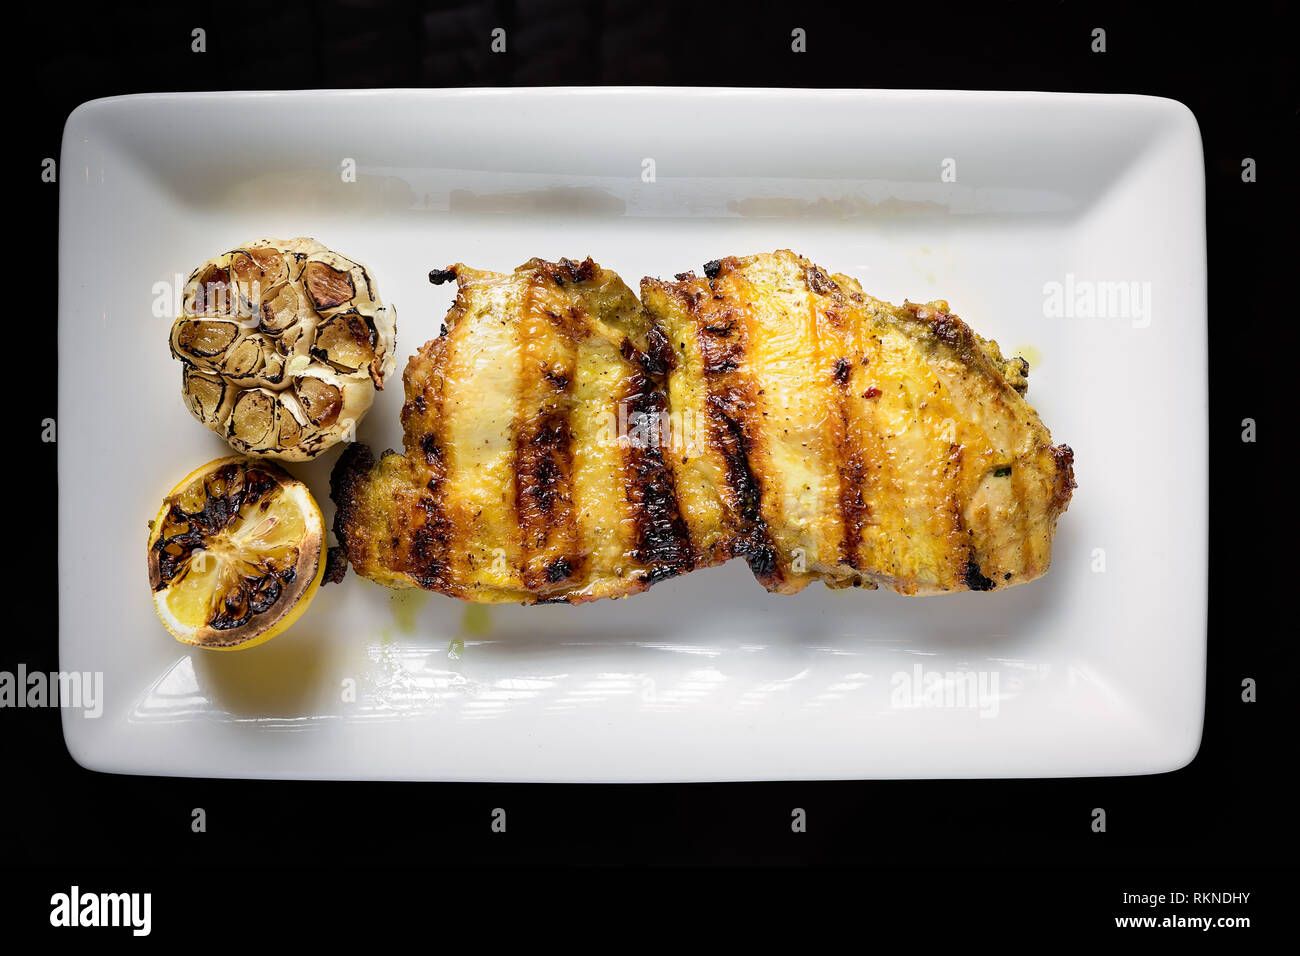 Photo du haut vers le bas d'un blanc de poulet grillé servi dessus une assiette blanche avec de l'ail cuit et du citron Banque D'Images